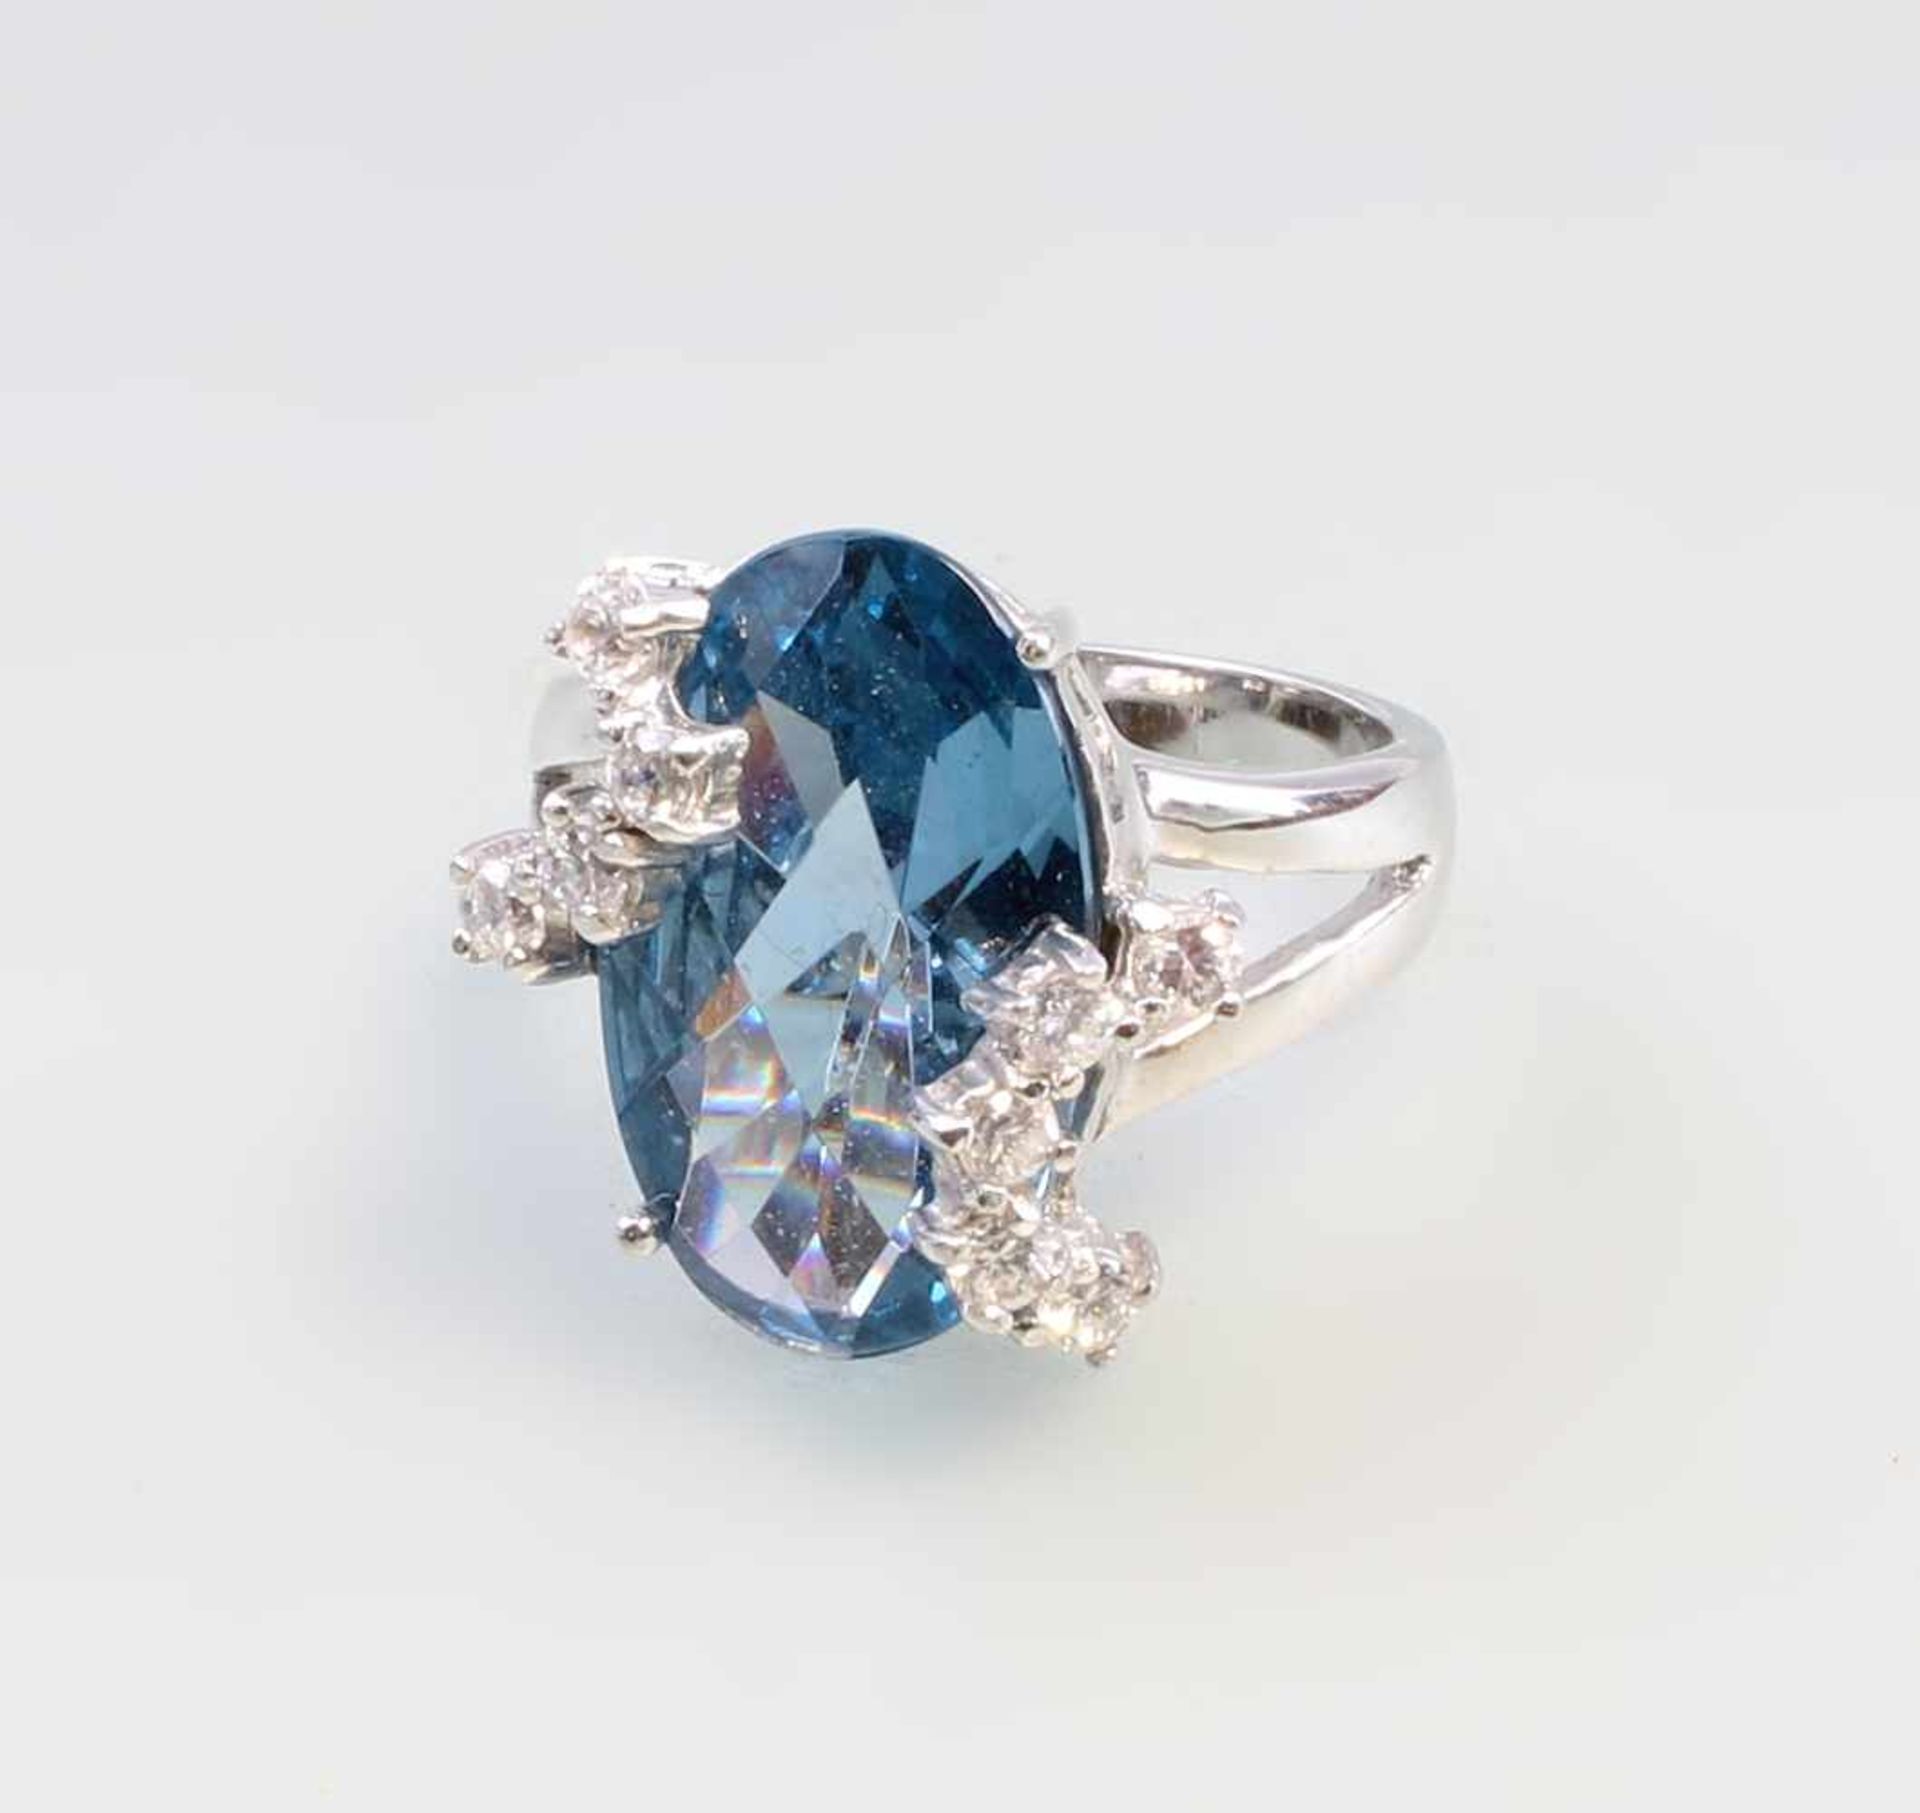 Blautopas-Ring mit weißen Steinen im Brillantschliff 925er Silber, 9,88 g, großer facettierter